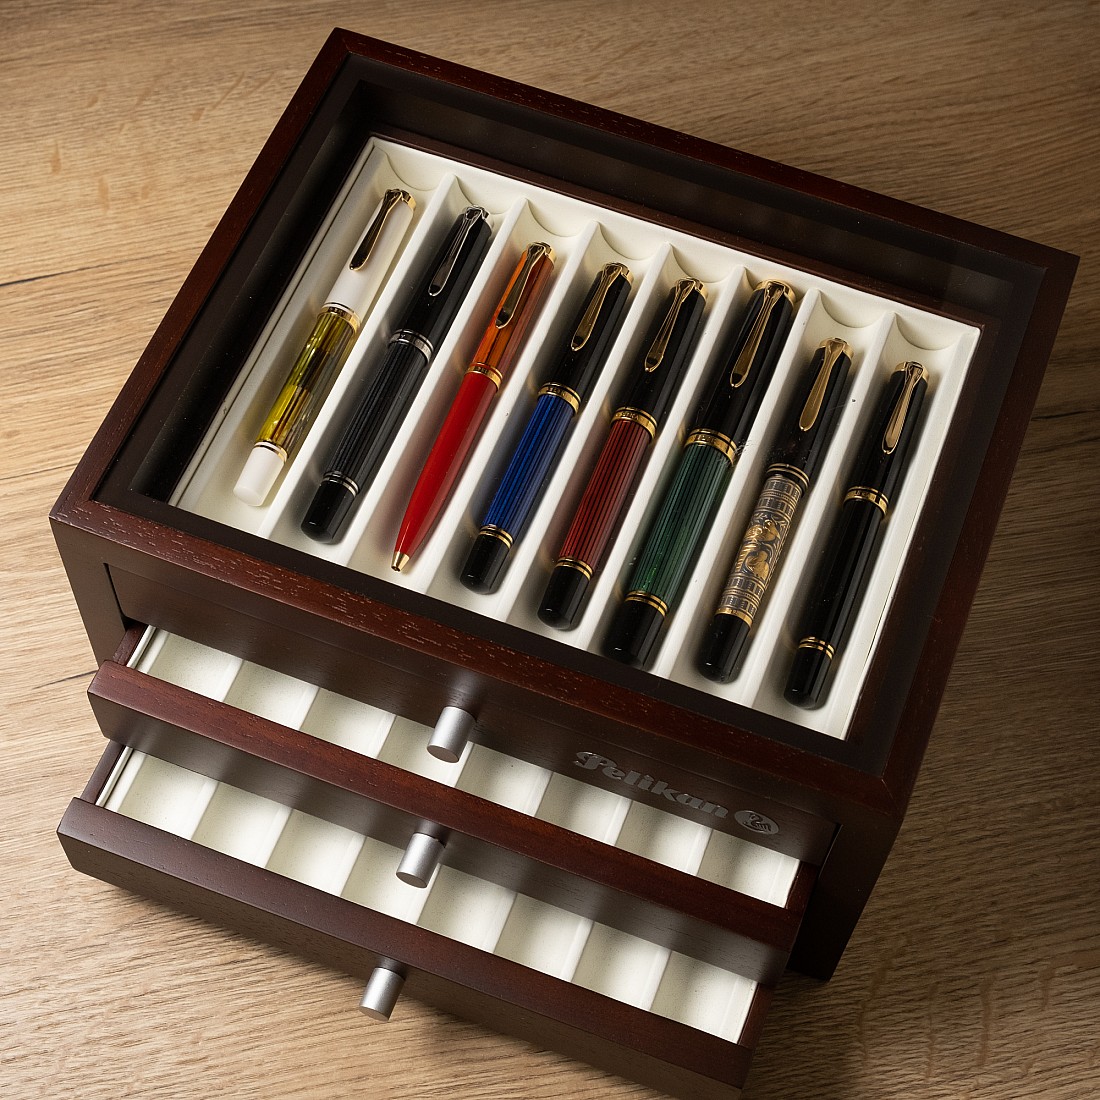 Stemmen verkwistend compact Pelikan Collector's Box (24 pens) - Verzameldoos / Pen case | Appelboom.com